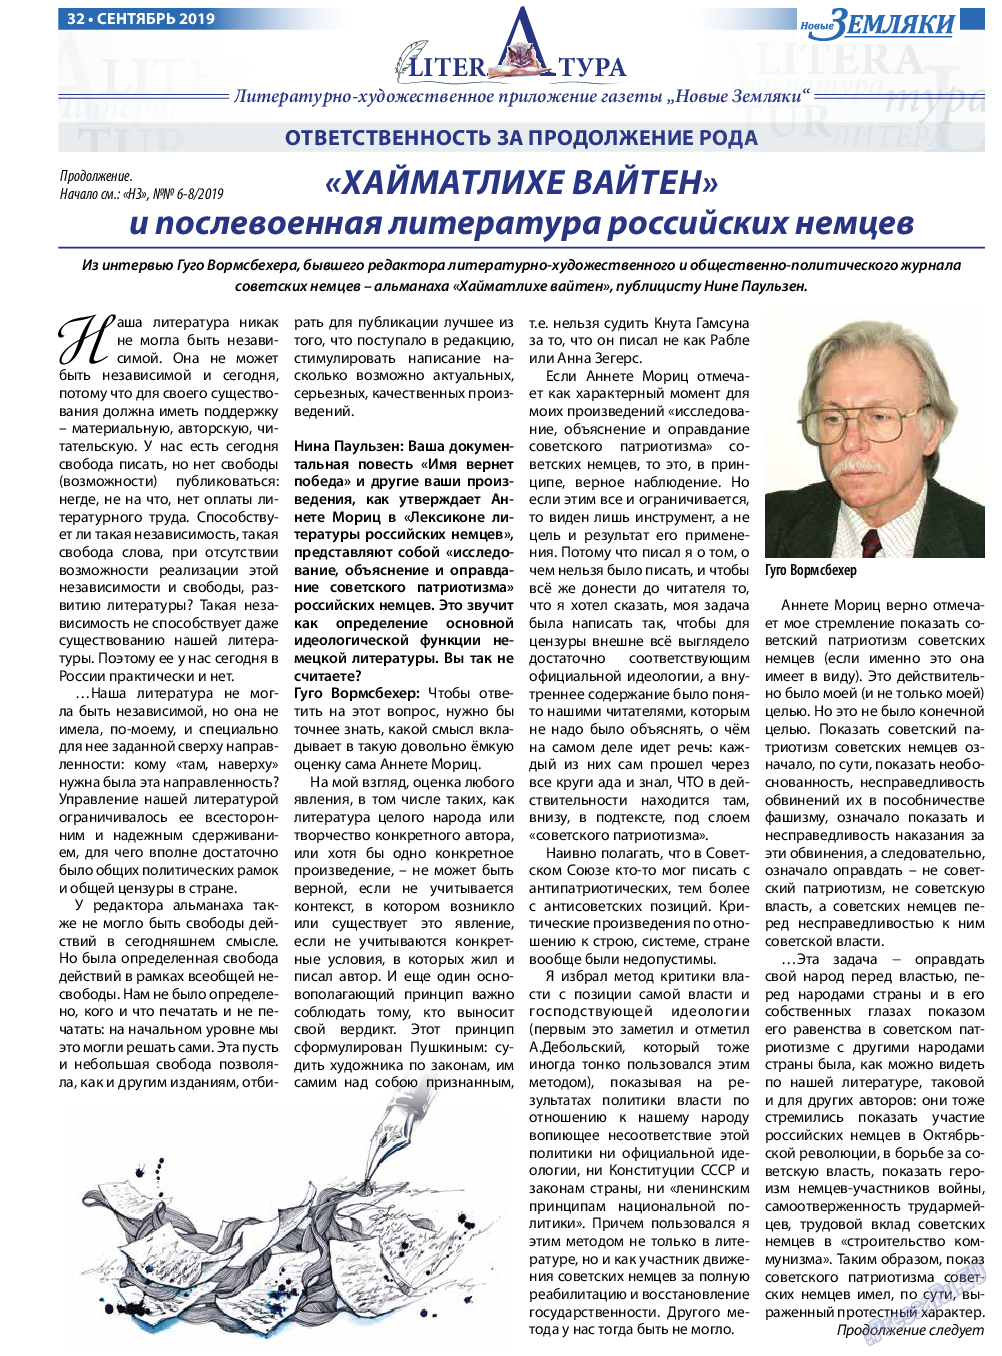 Новые Земляки (газета). 2019 год, номер 9, стр. 32